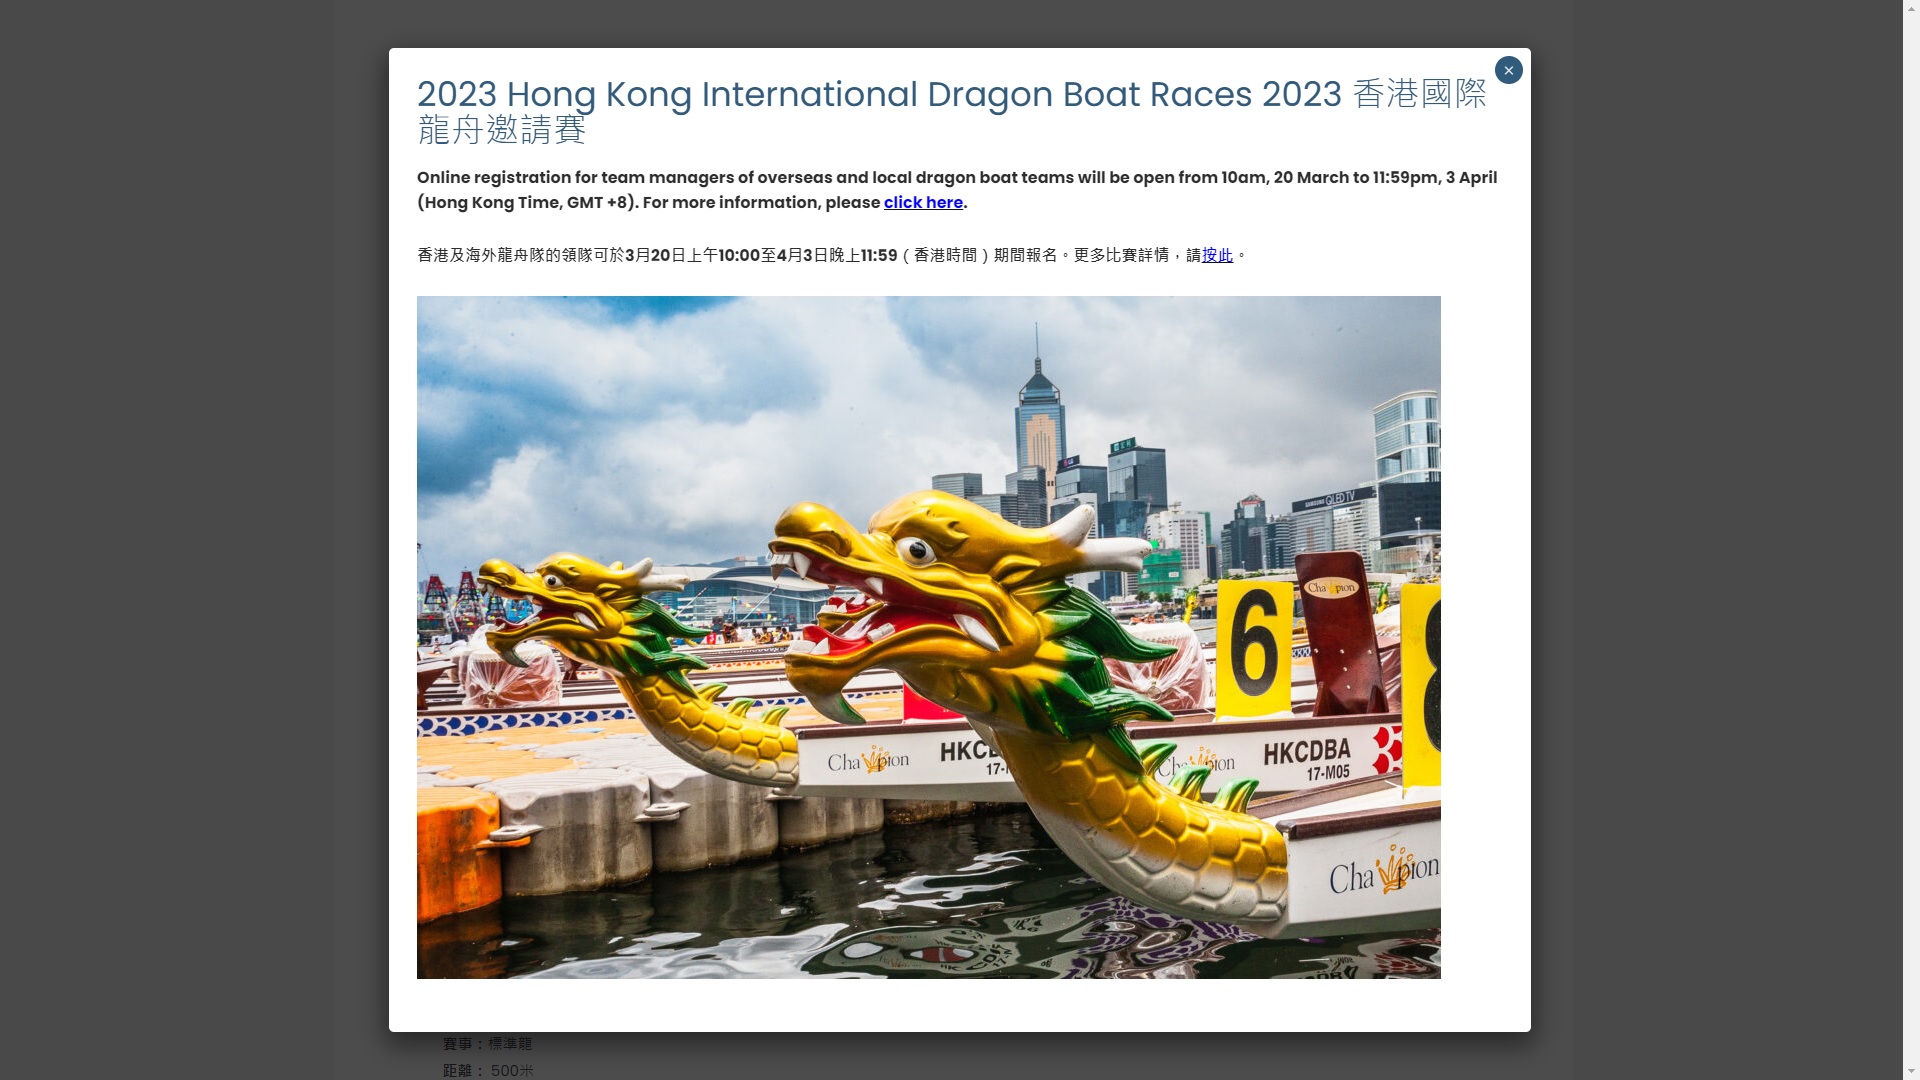 「香港國際龍舟邀請賽」將於6月24至25日舉行